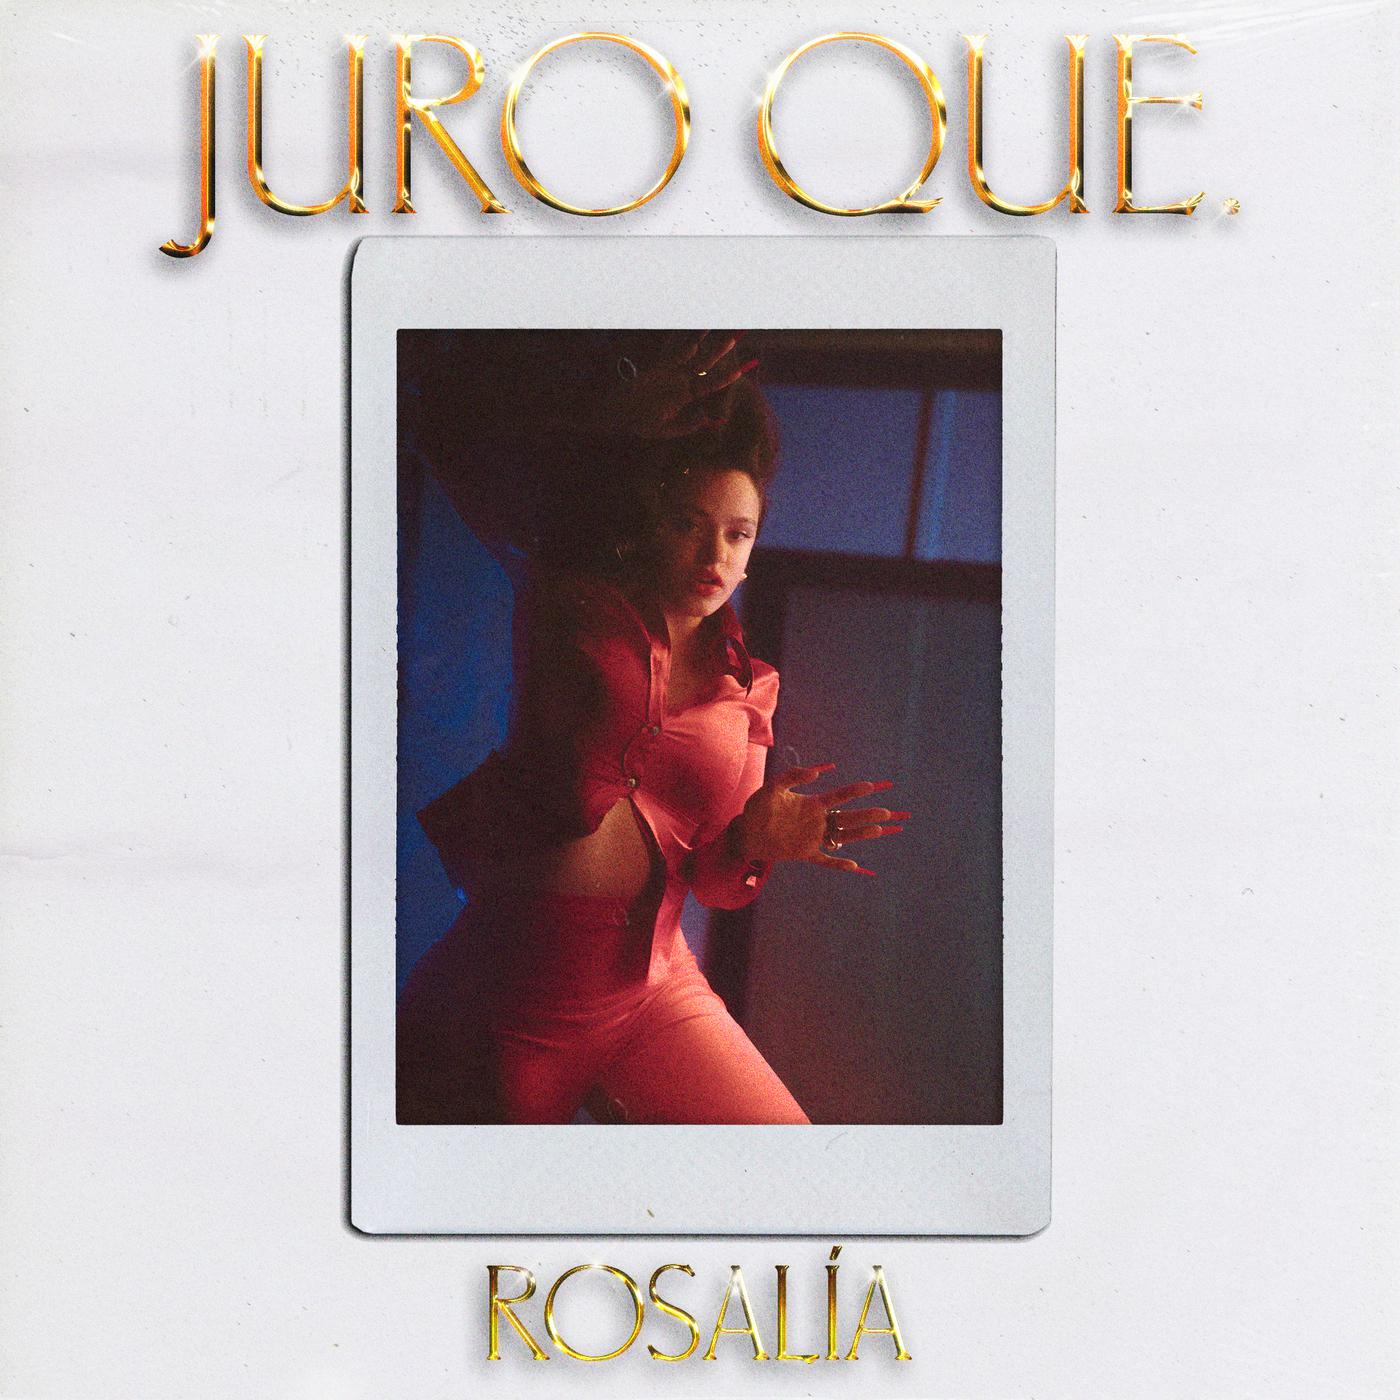 Juro Que歌词 歌手ROSALÍA-专辑Juro Que-单曲《Juro Que》LRC歌词下载